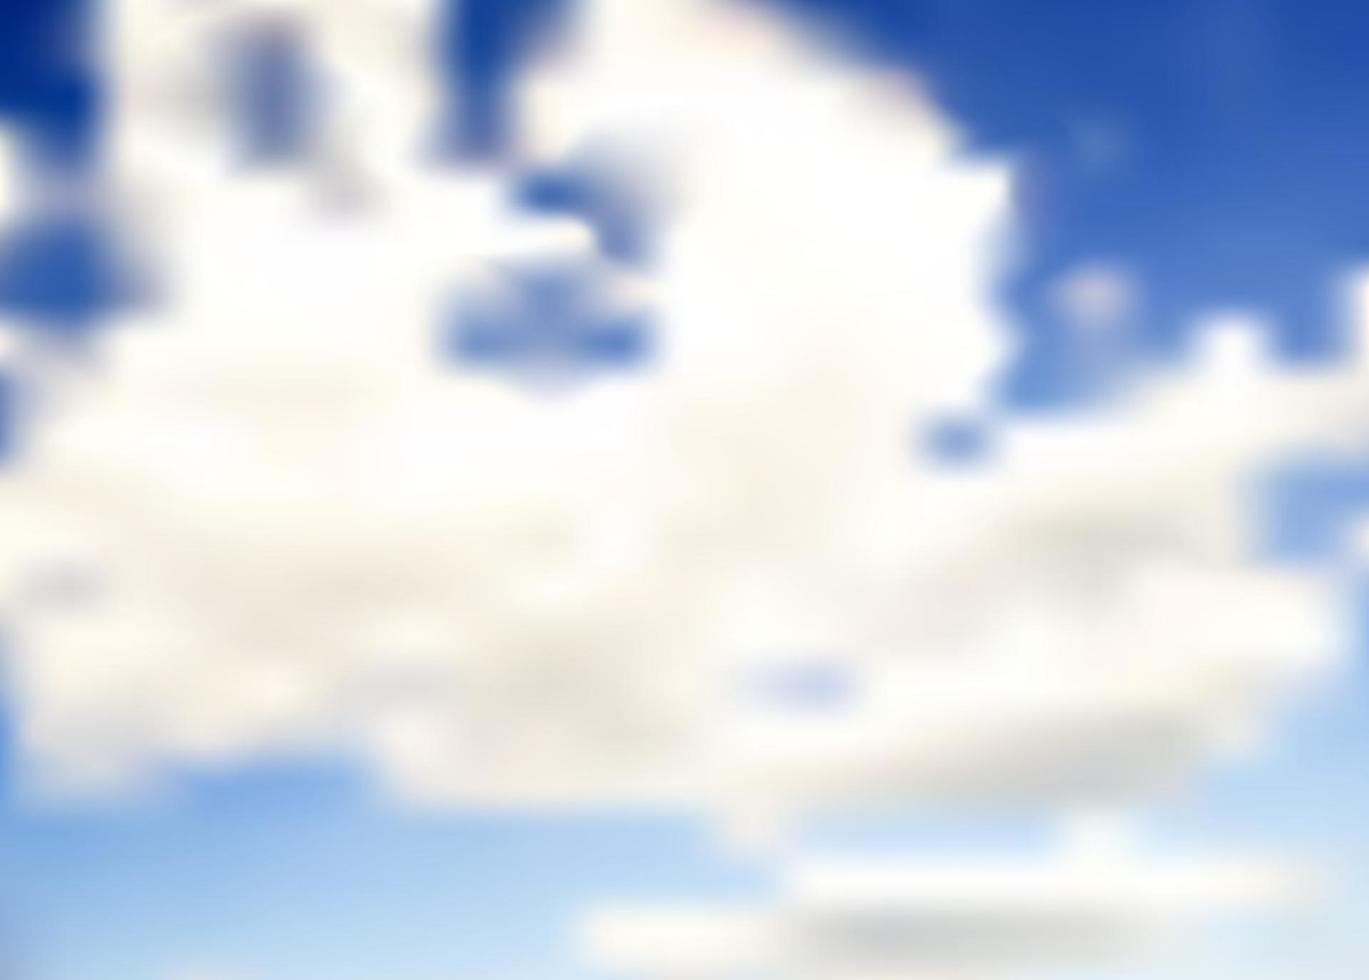 illustration vectorielle de fond abstrait nuage vecteur